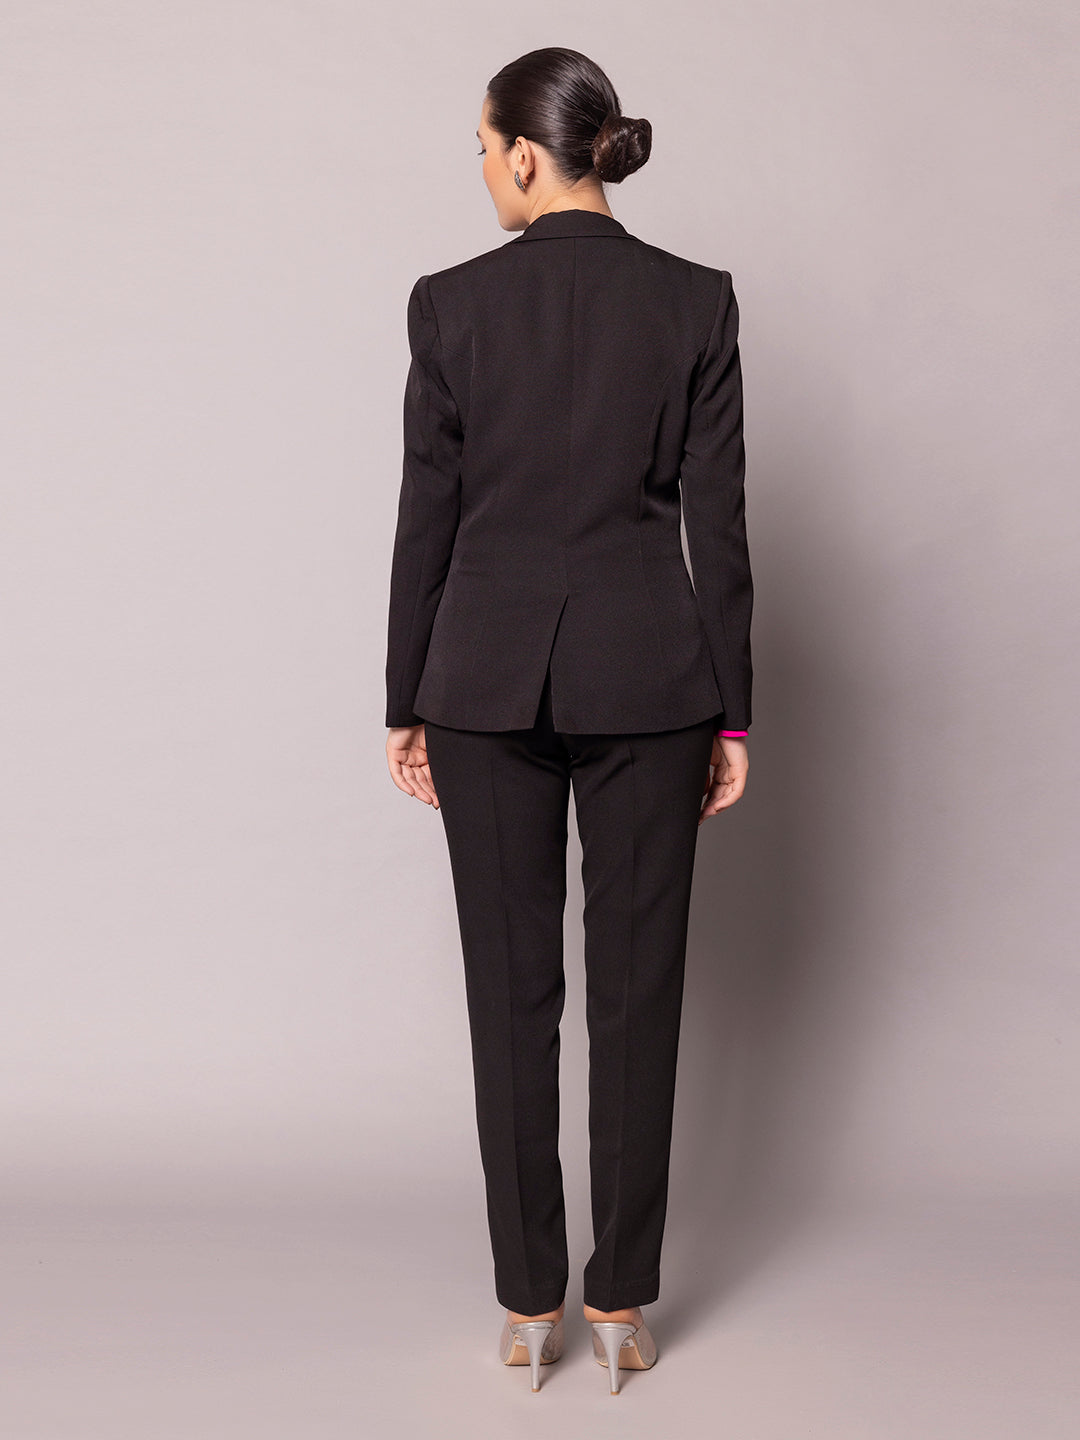 Black stretch Woman Suit